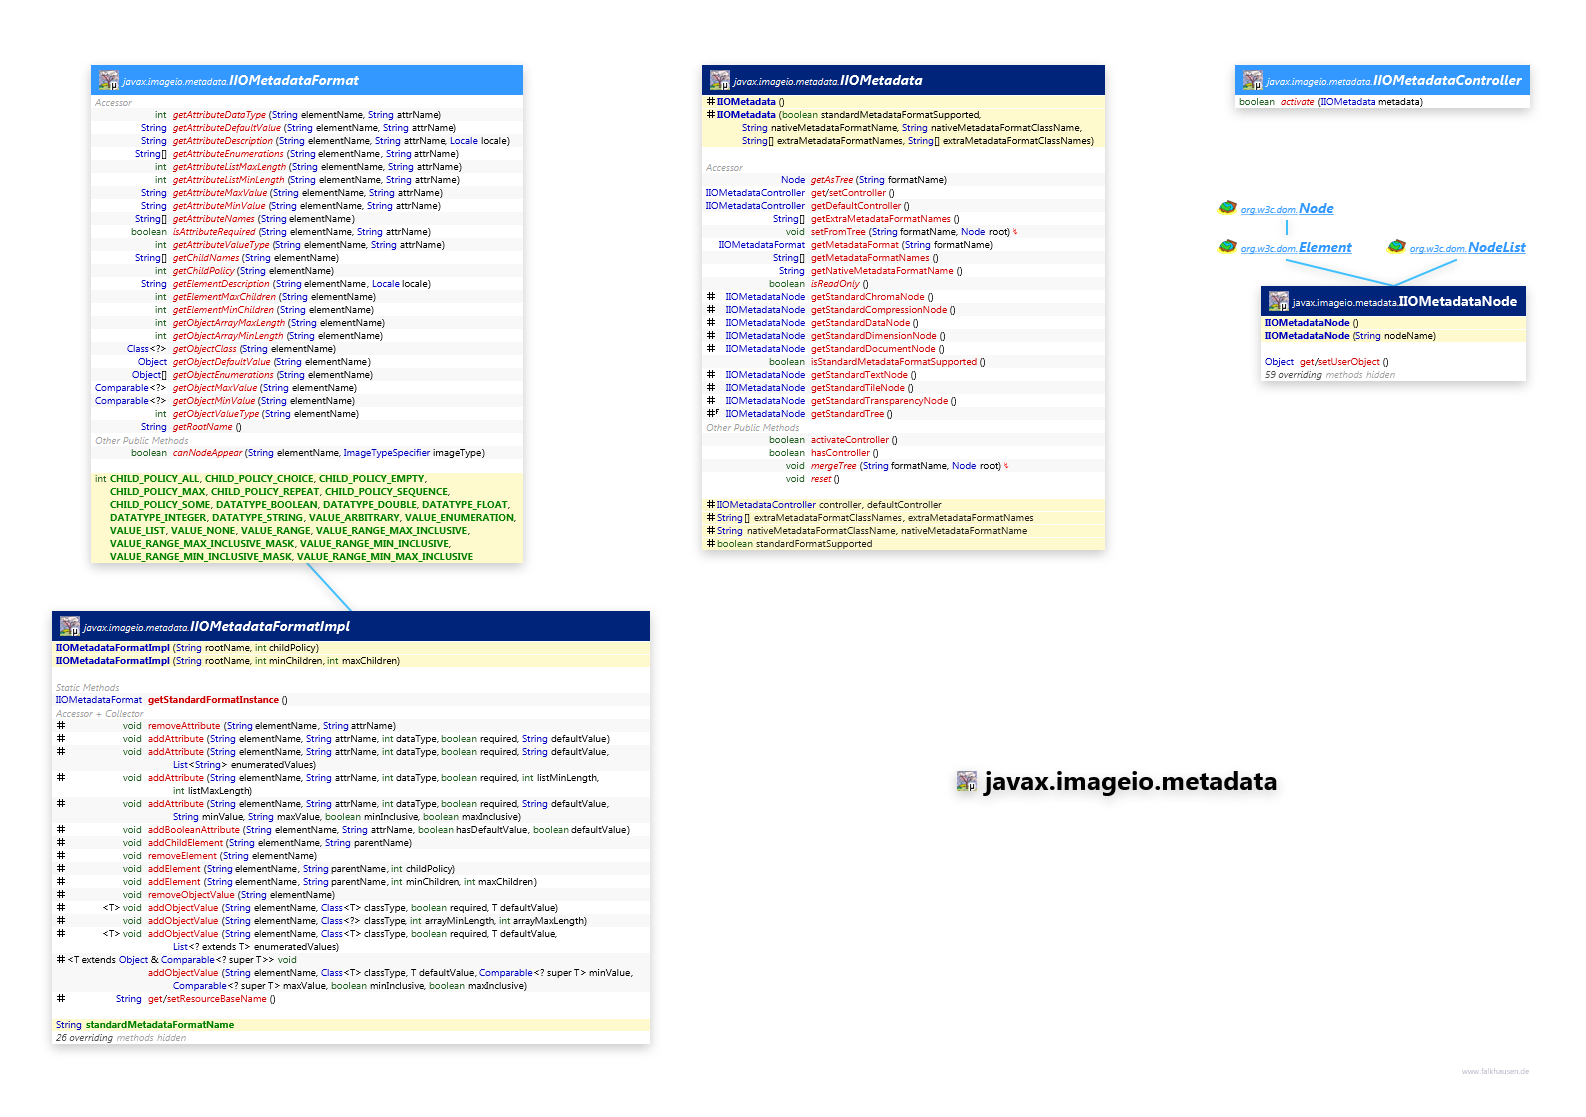 javax.imageio.metadata class diagram and api documentation for Java 8